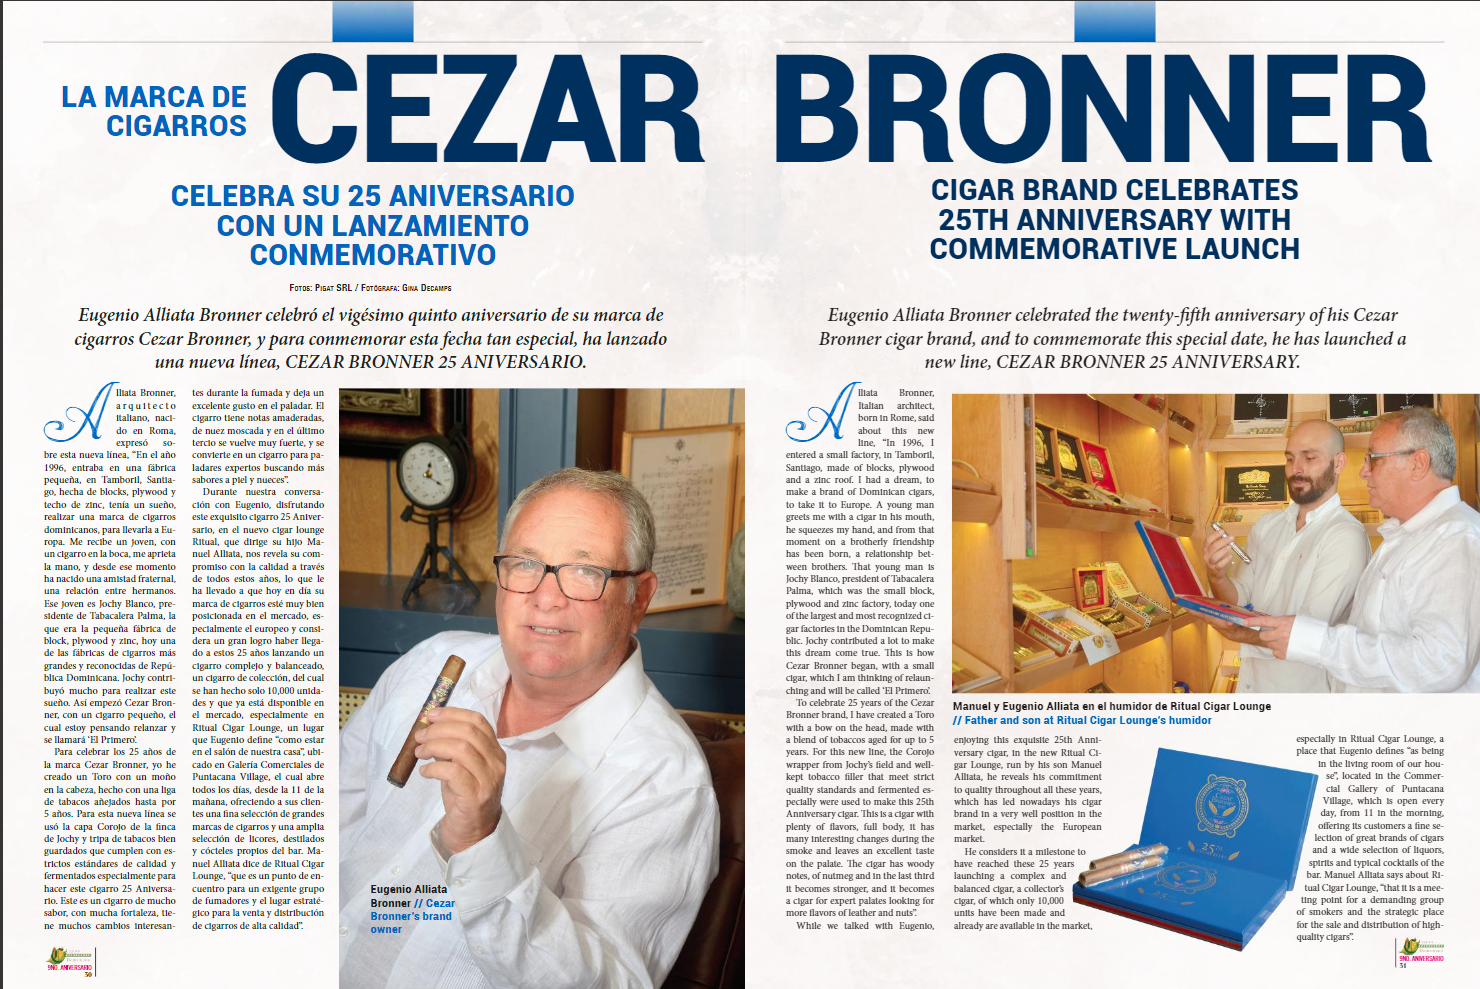 Cezar Bronner Celebrates its 25th Anniversary | Cigarro Dominicano Magazine